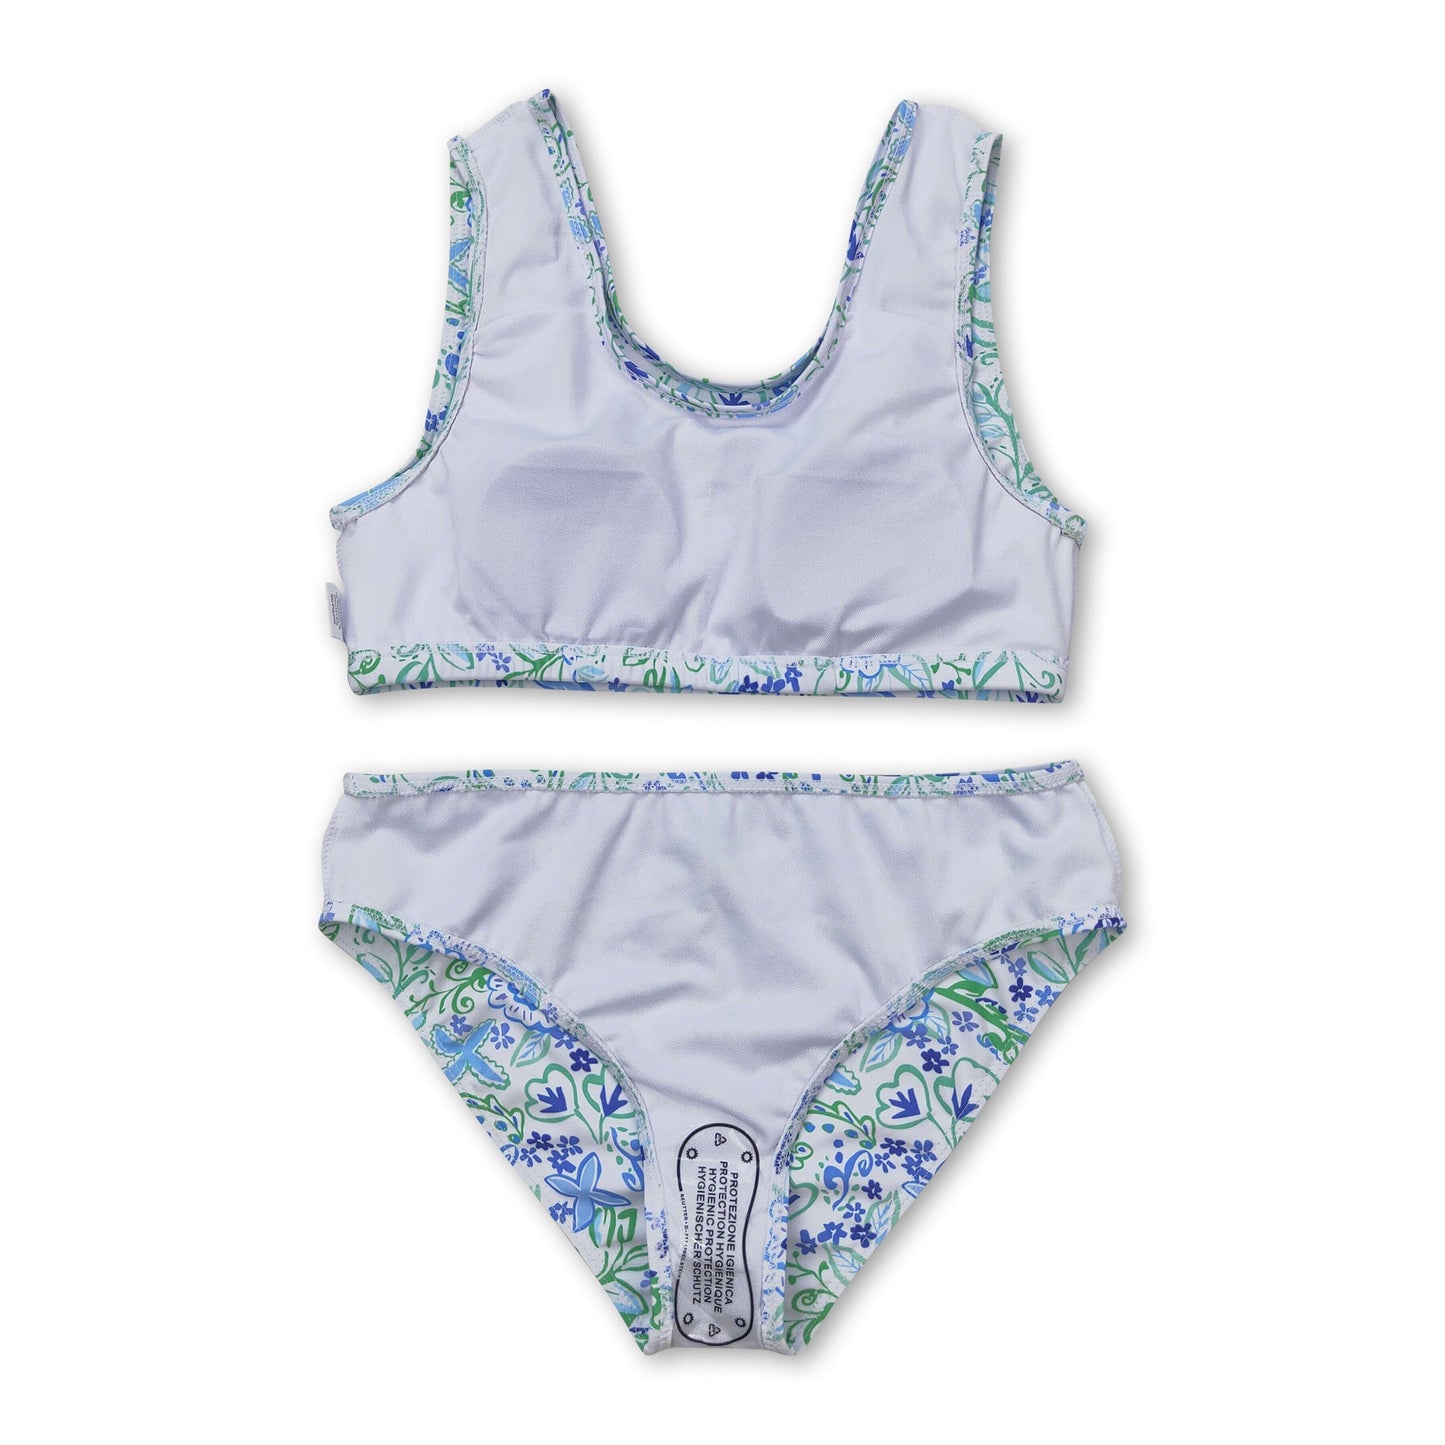 Light blue green floral 2pcs girls summer swimsuit